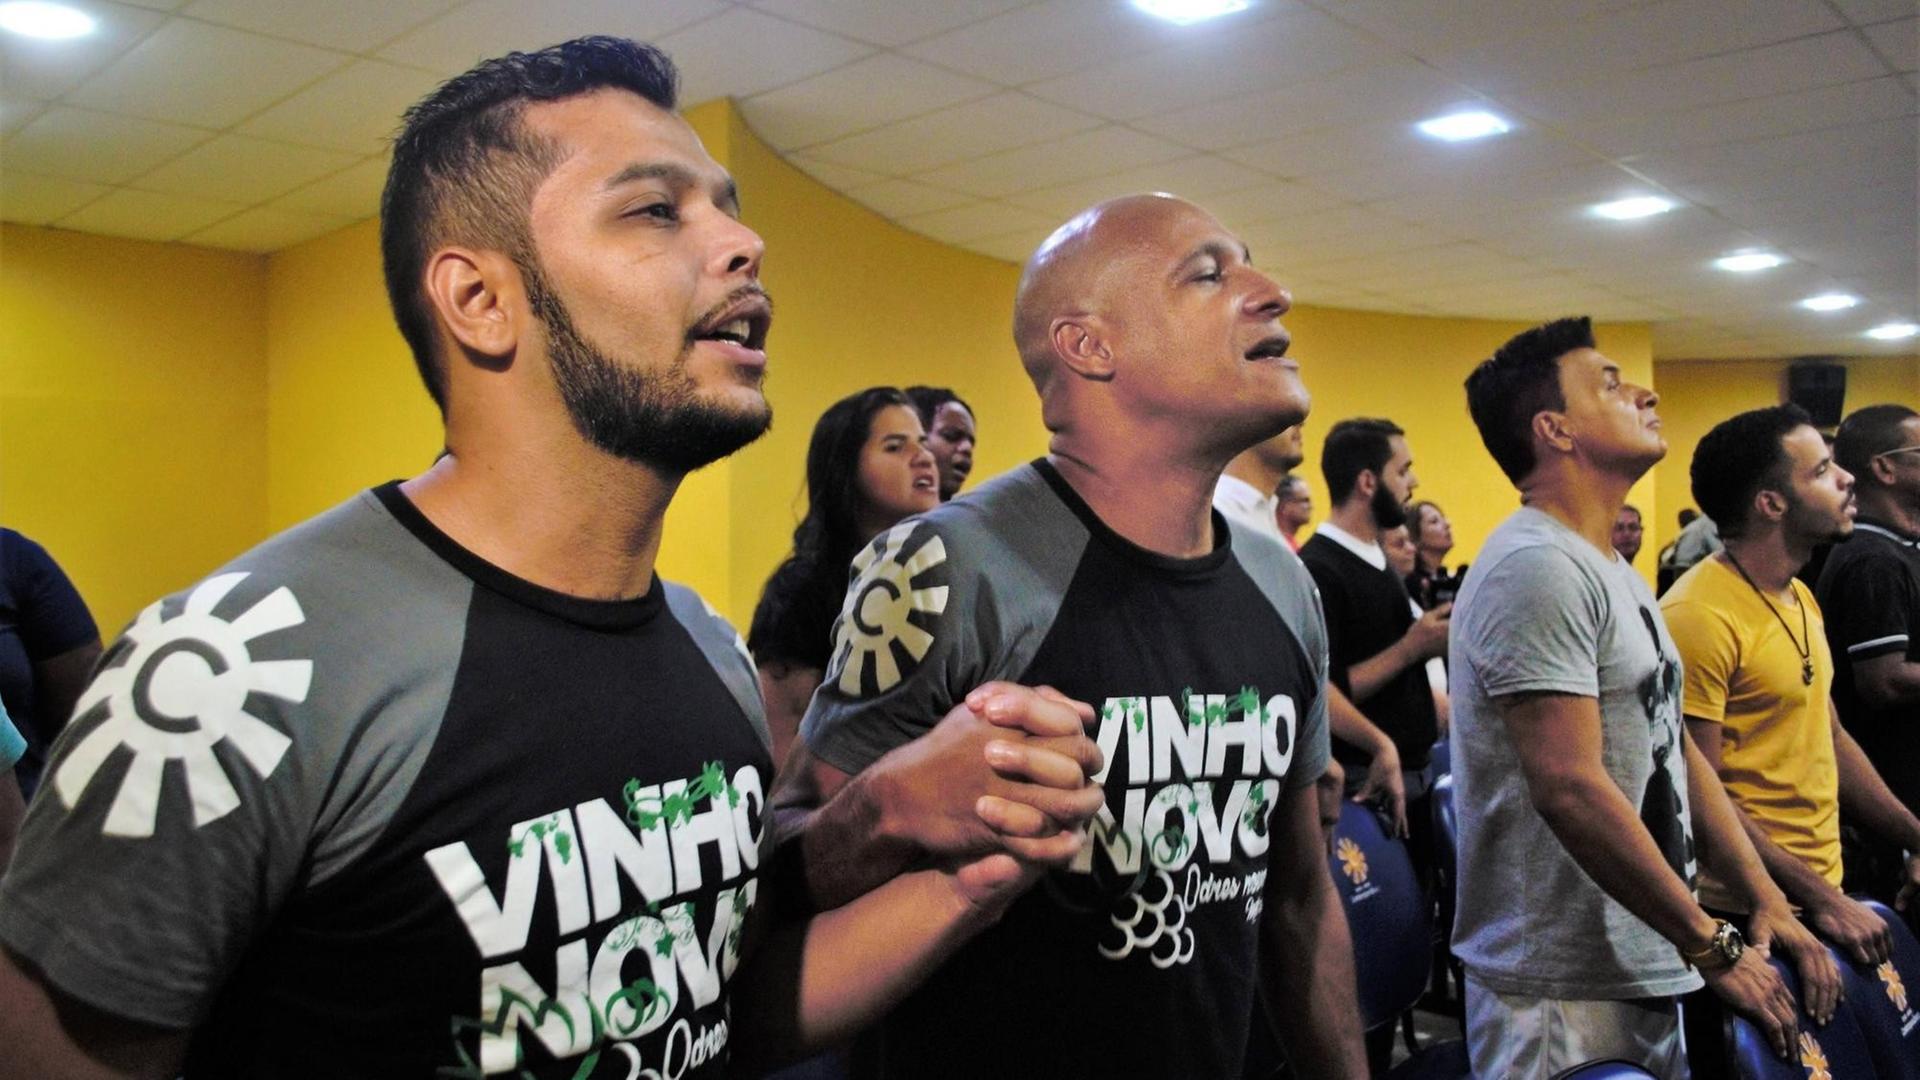 Zum Gottesdienst in der Igreja Crista Contemporanea in Rio de Janeiro sind rund 200 Gläubige gekommen, die gemeinsam singen und beten.